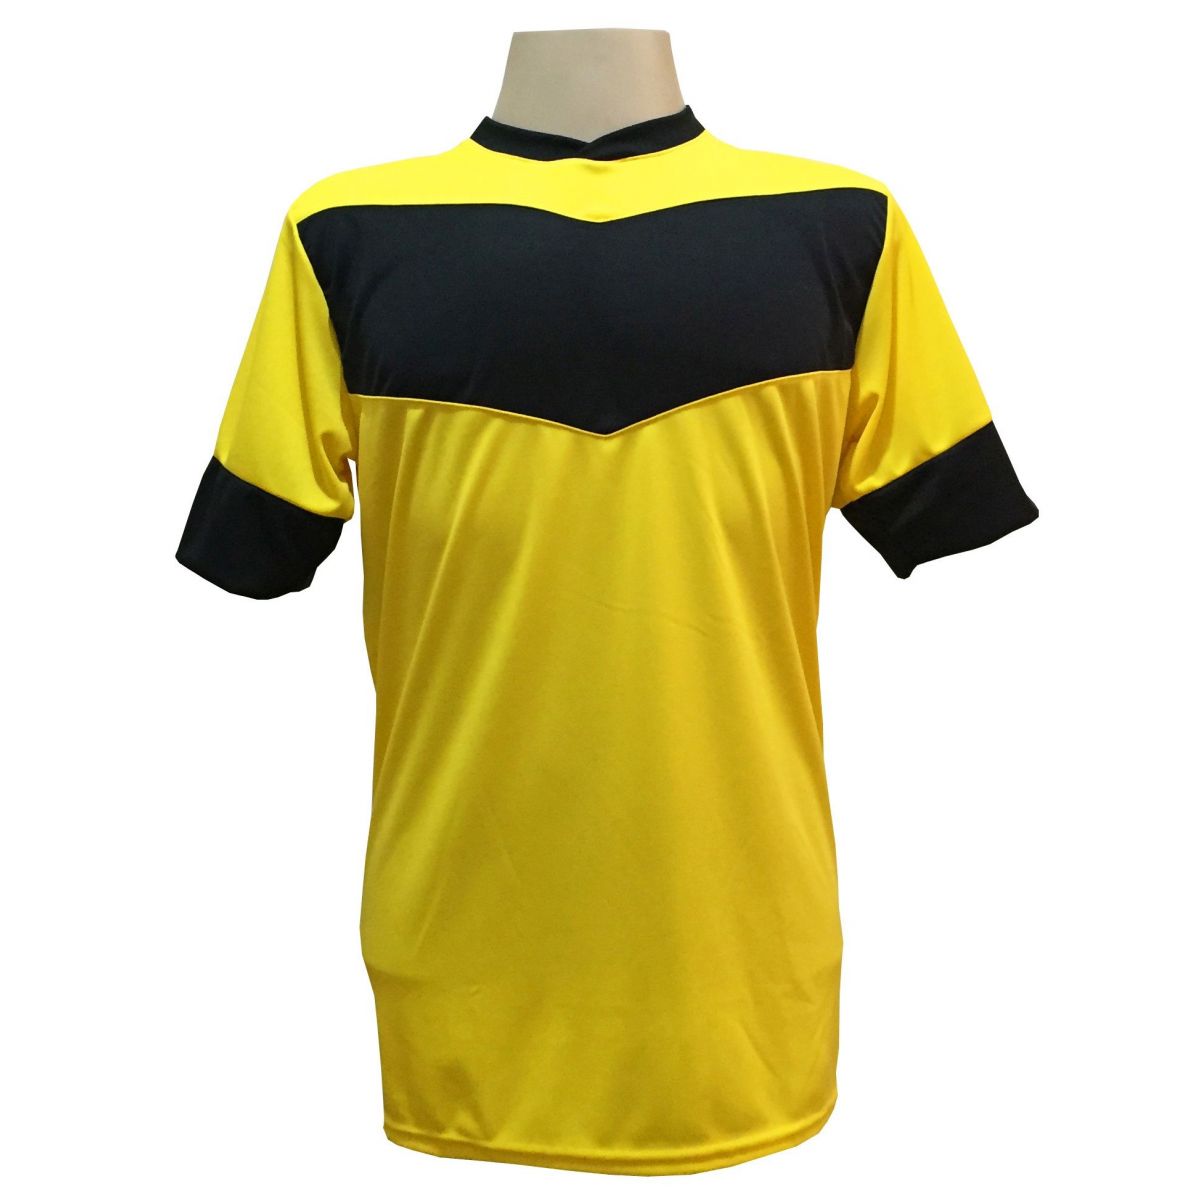 Uniforme Esportivo com 18 camisas modelo Columbus Amarelo/Preto + 18 calções modelo Madrid + 1 Goleiro + Brindes